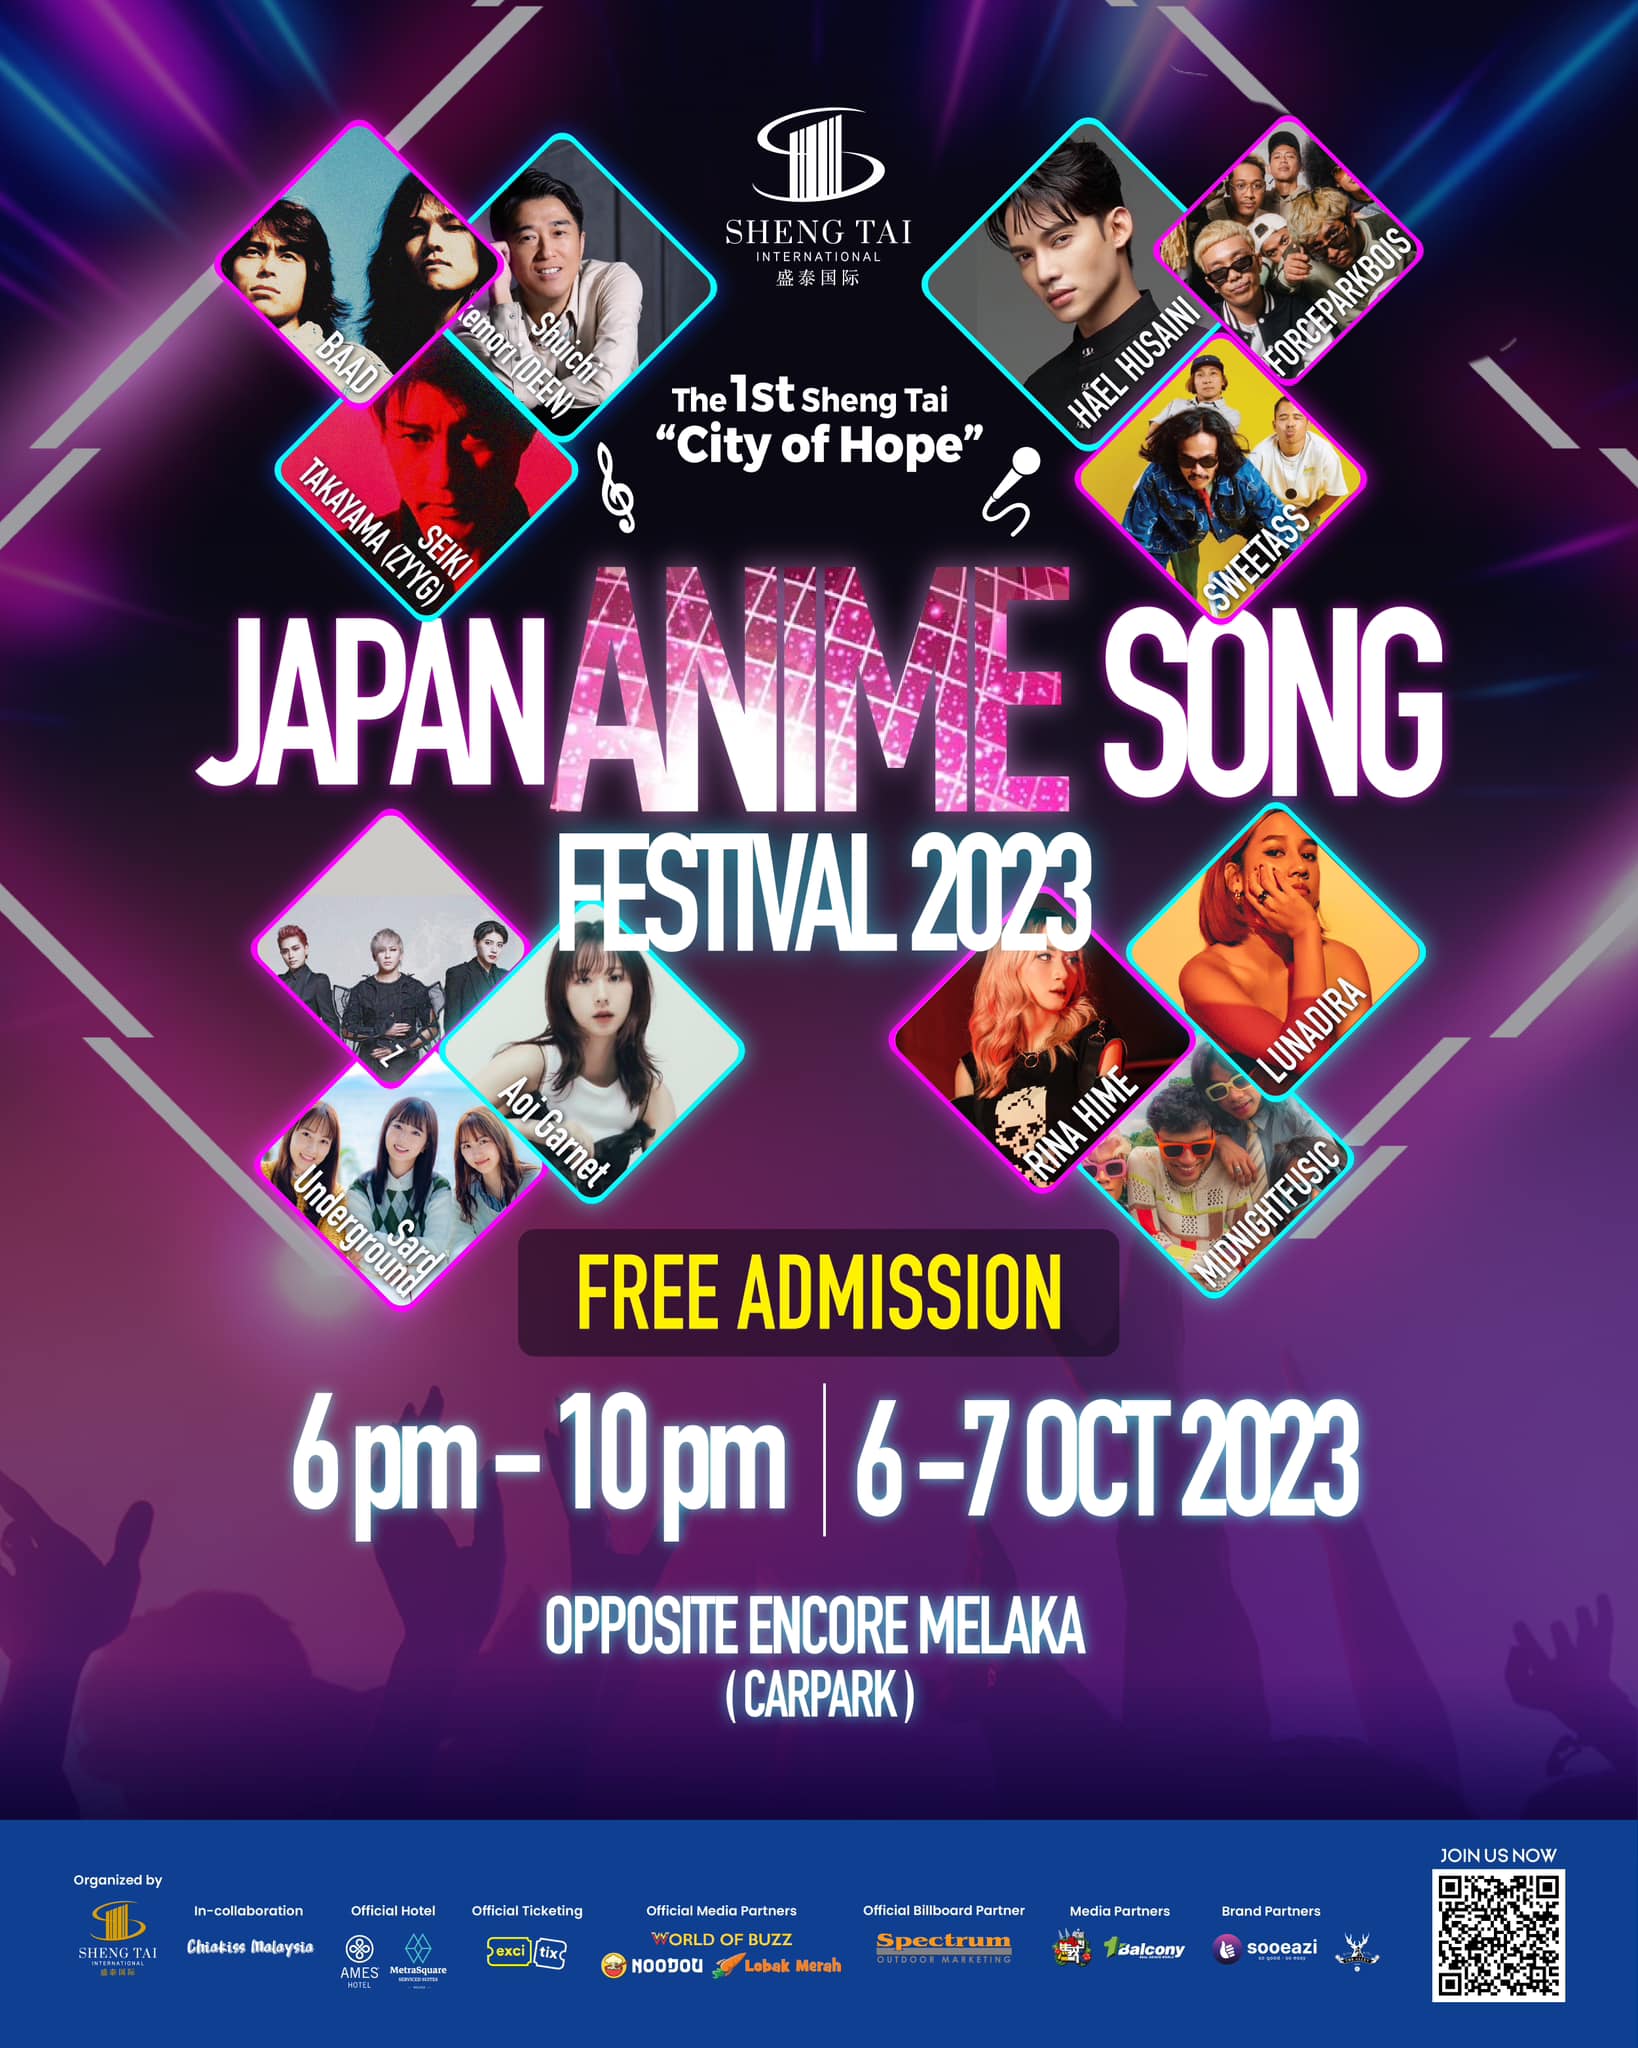 Japan Anime Song Festival 2023